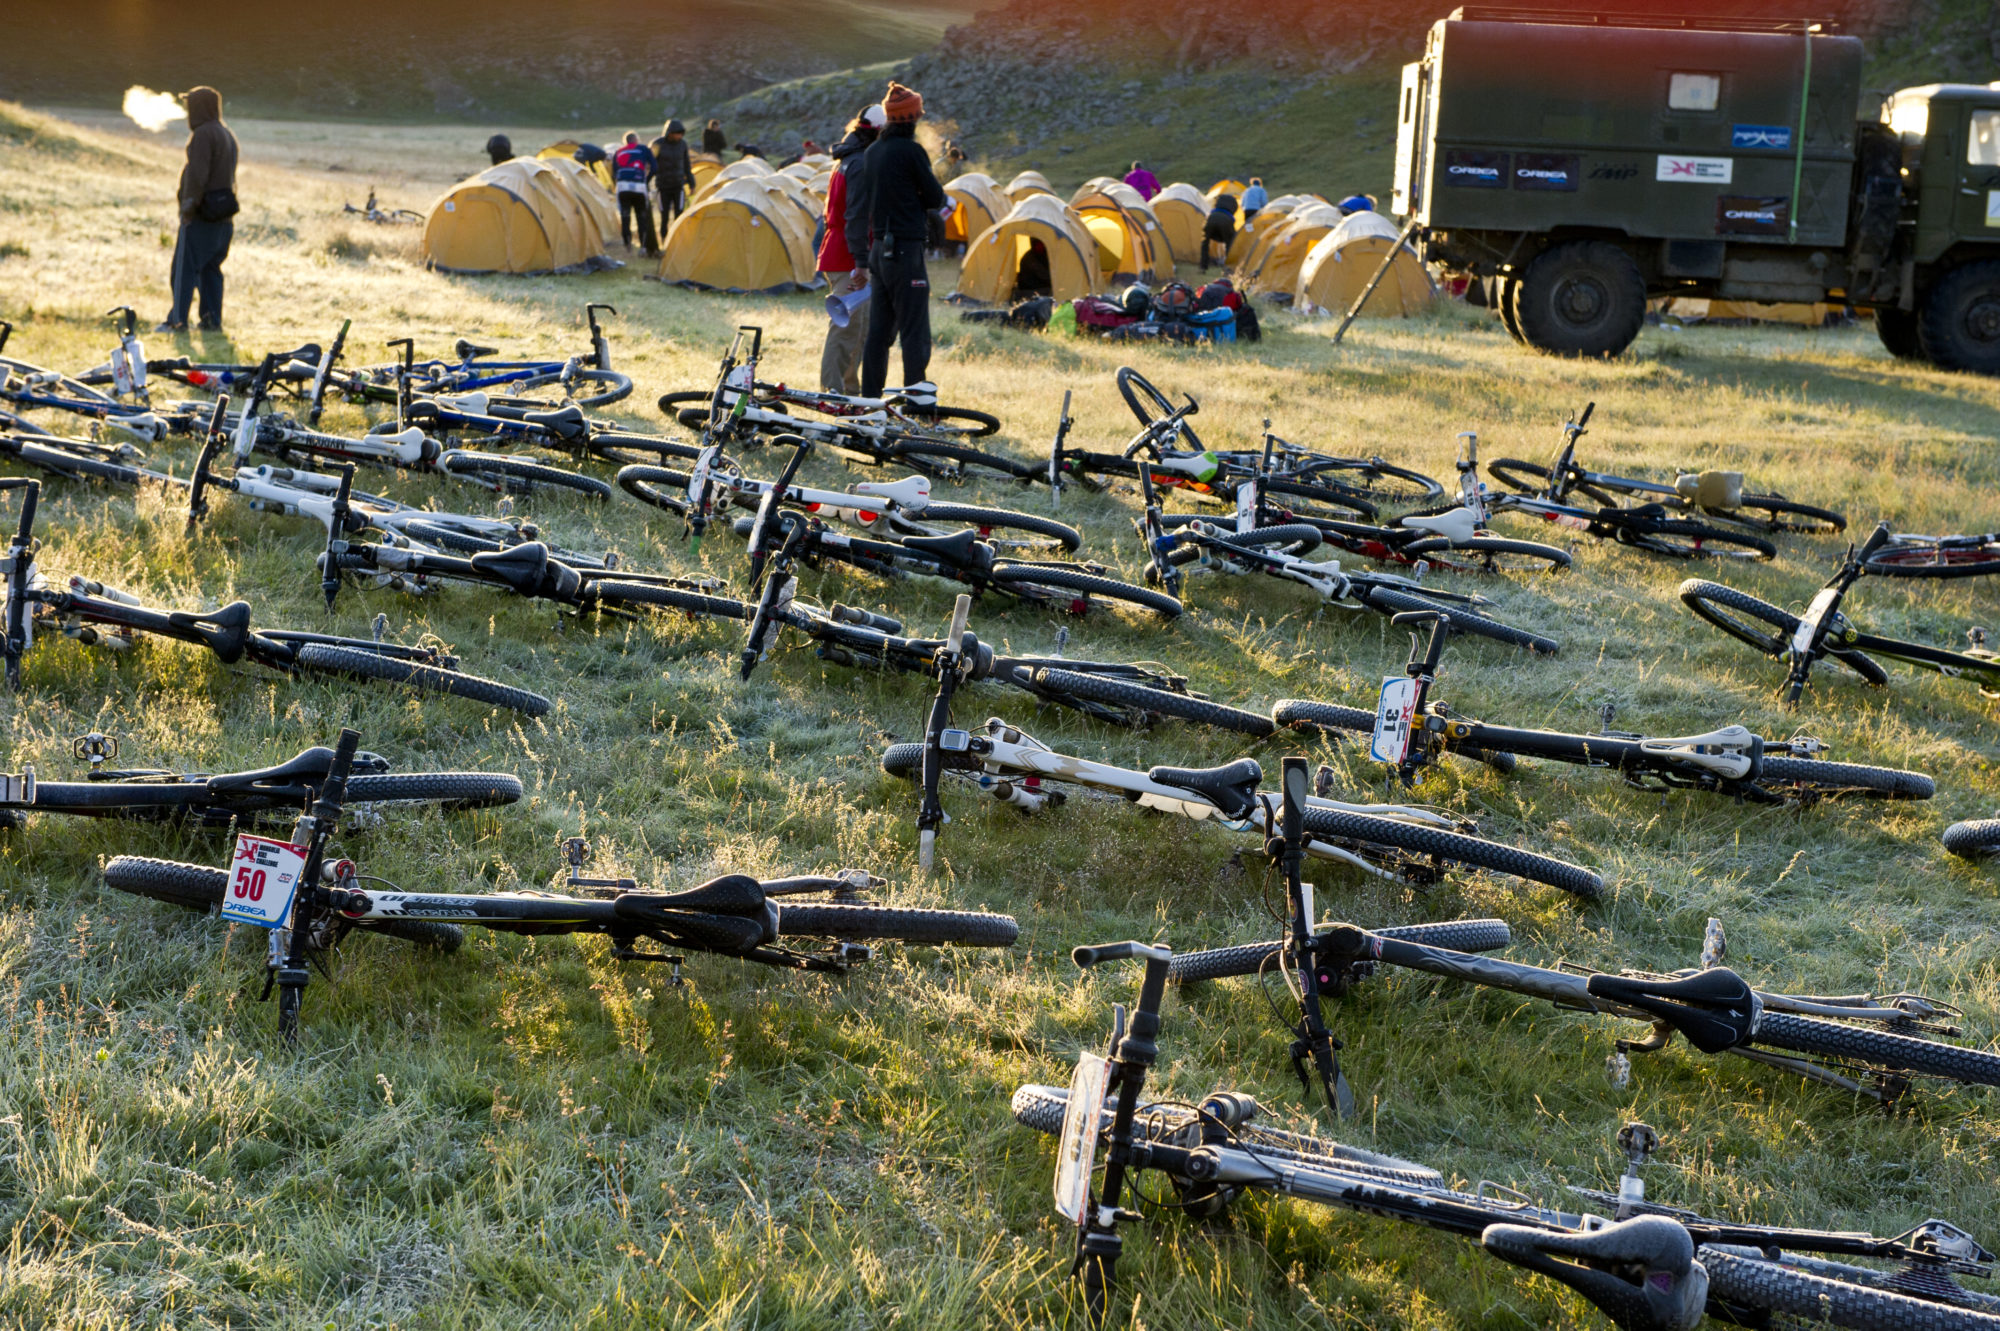 Foto di Tende dei partecipanti alla Mongolia Bike Challange